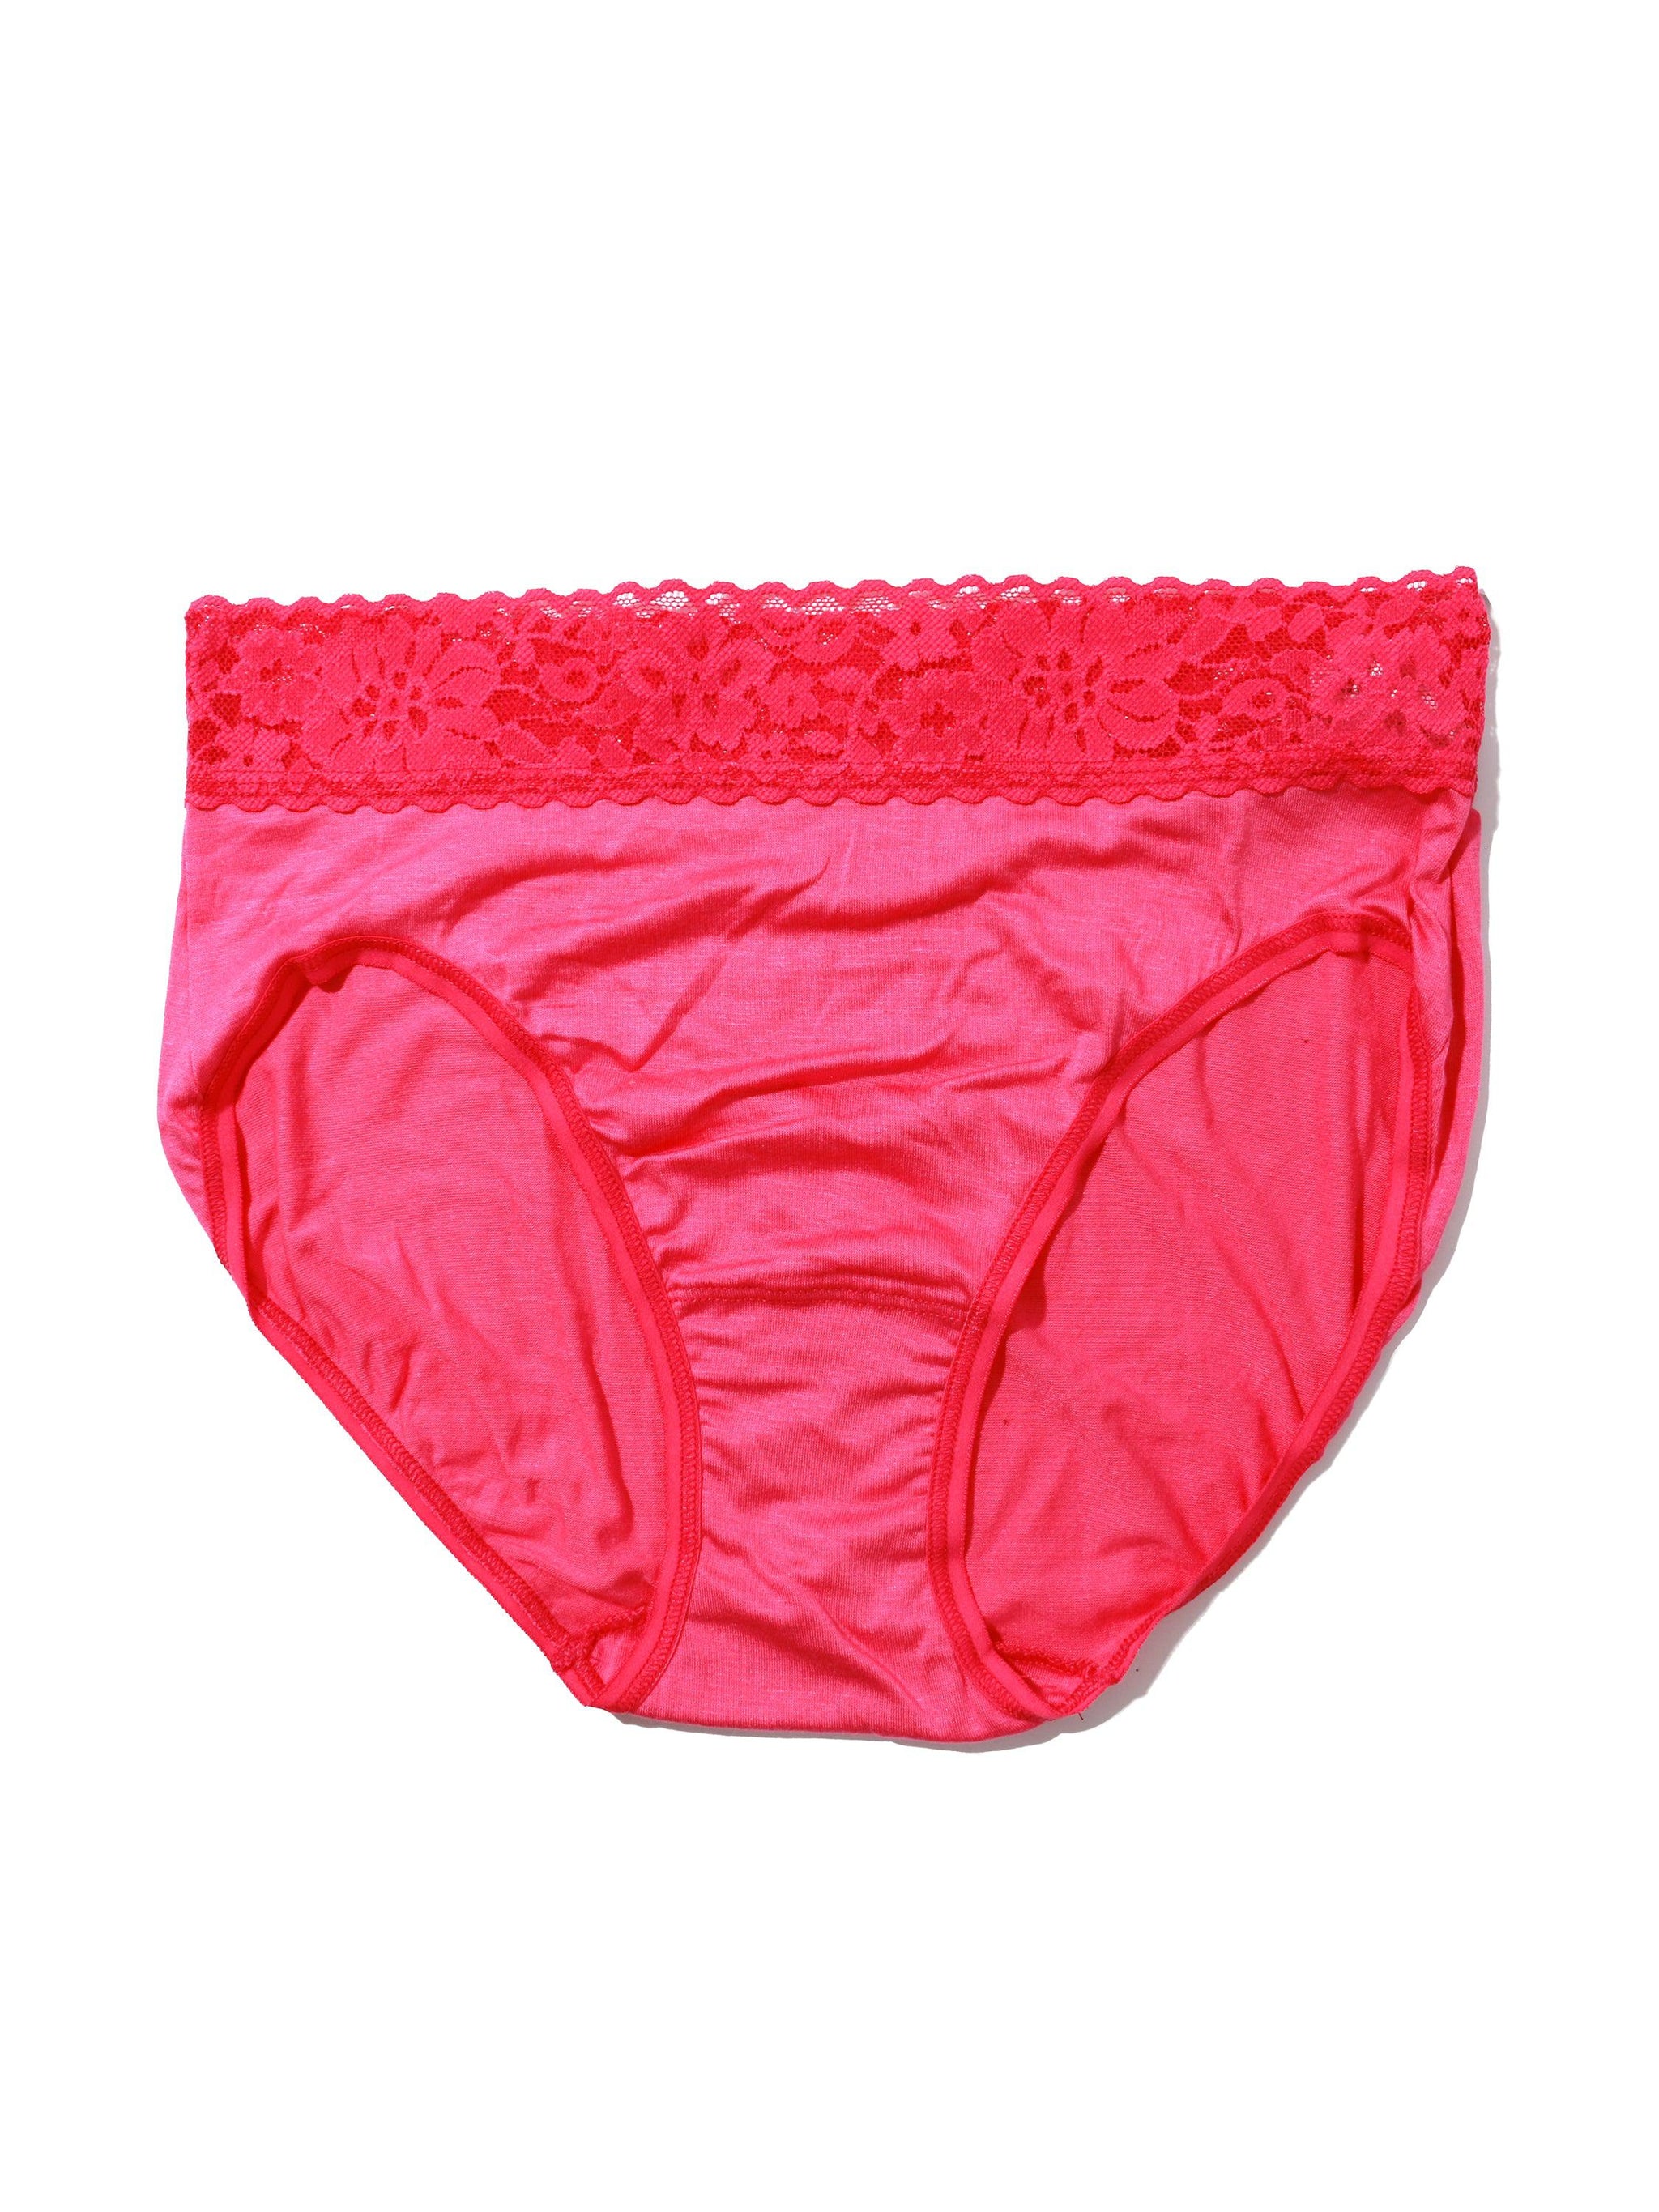 French Briefs Full Coverage Underwear